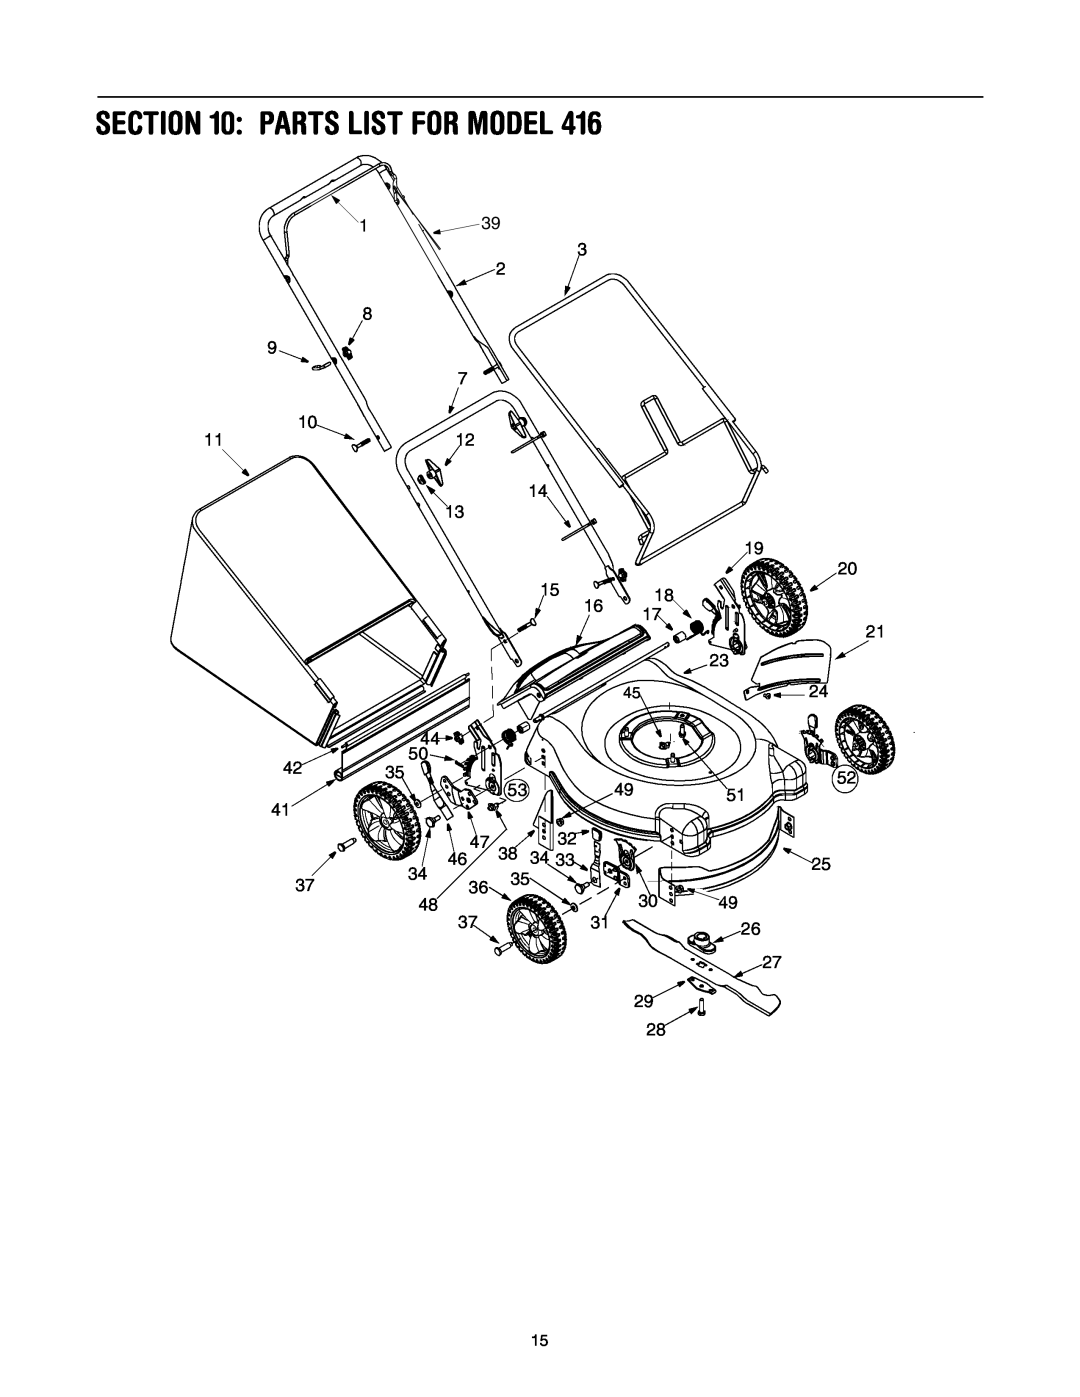 Bolens 416 manual Parts List For Model 